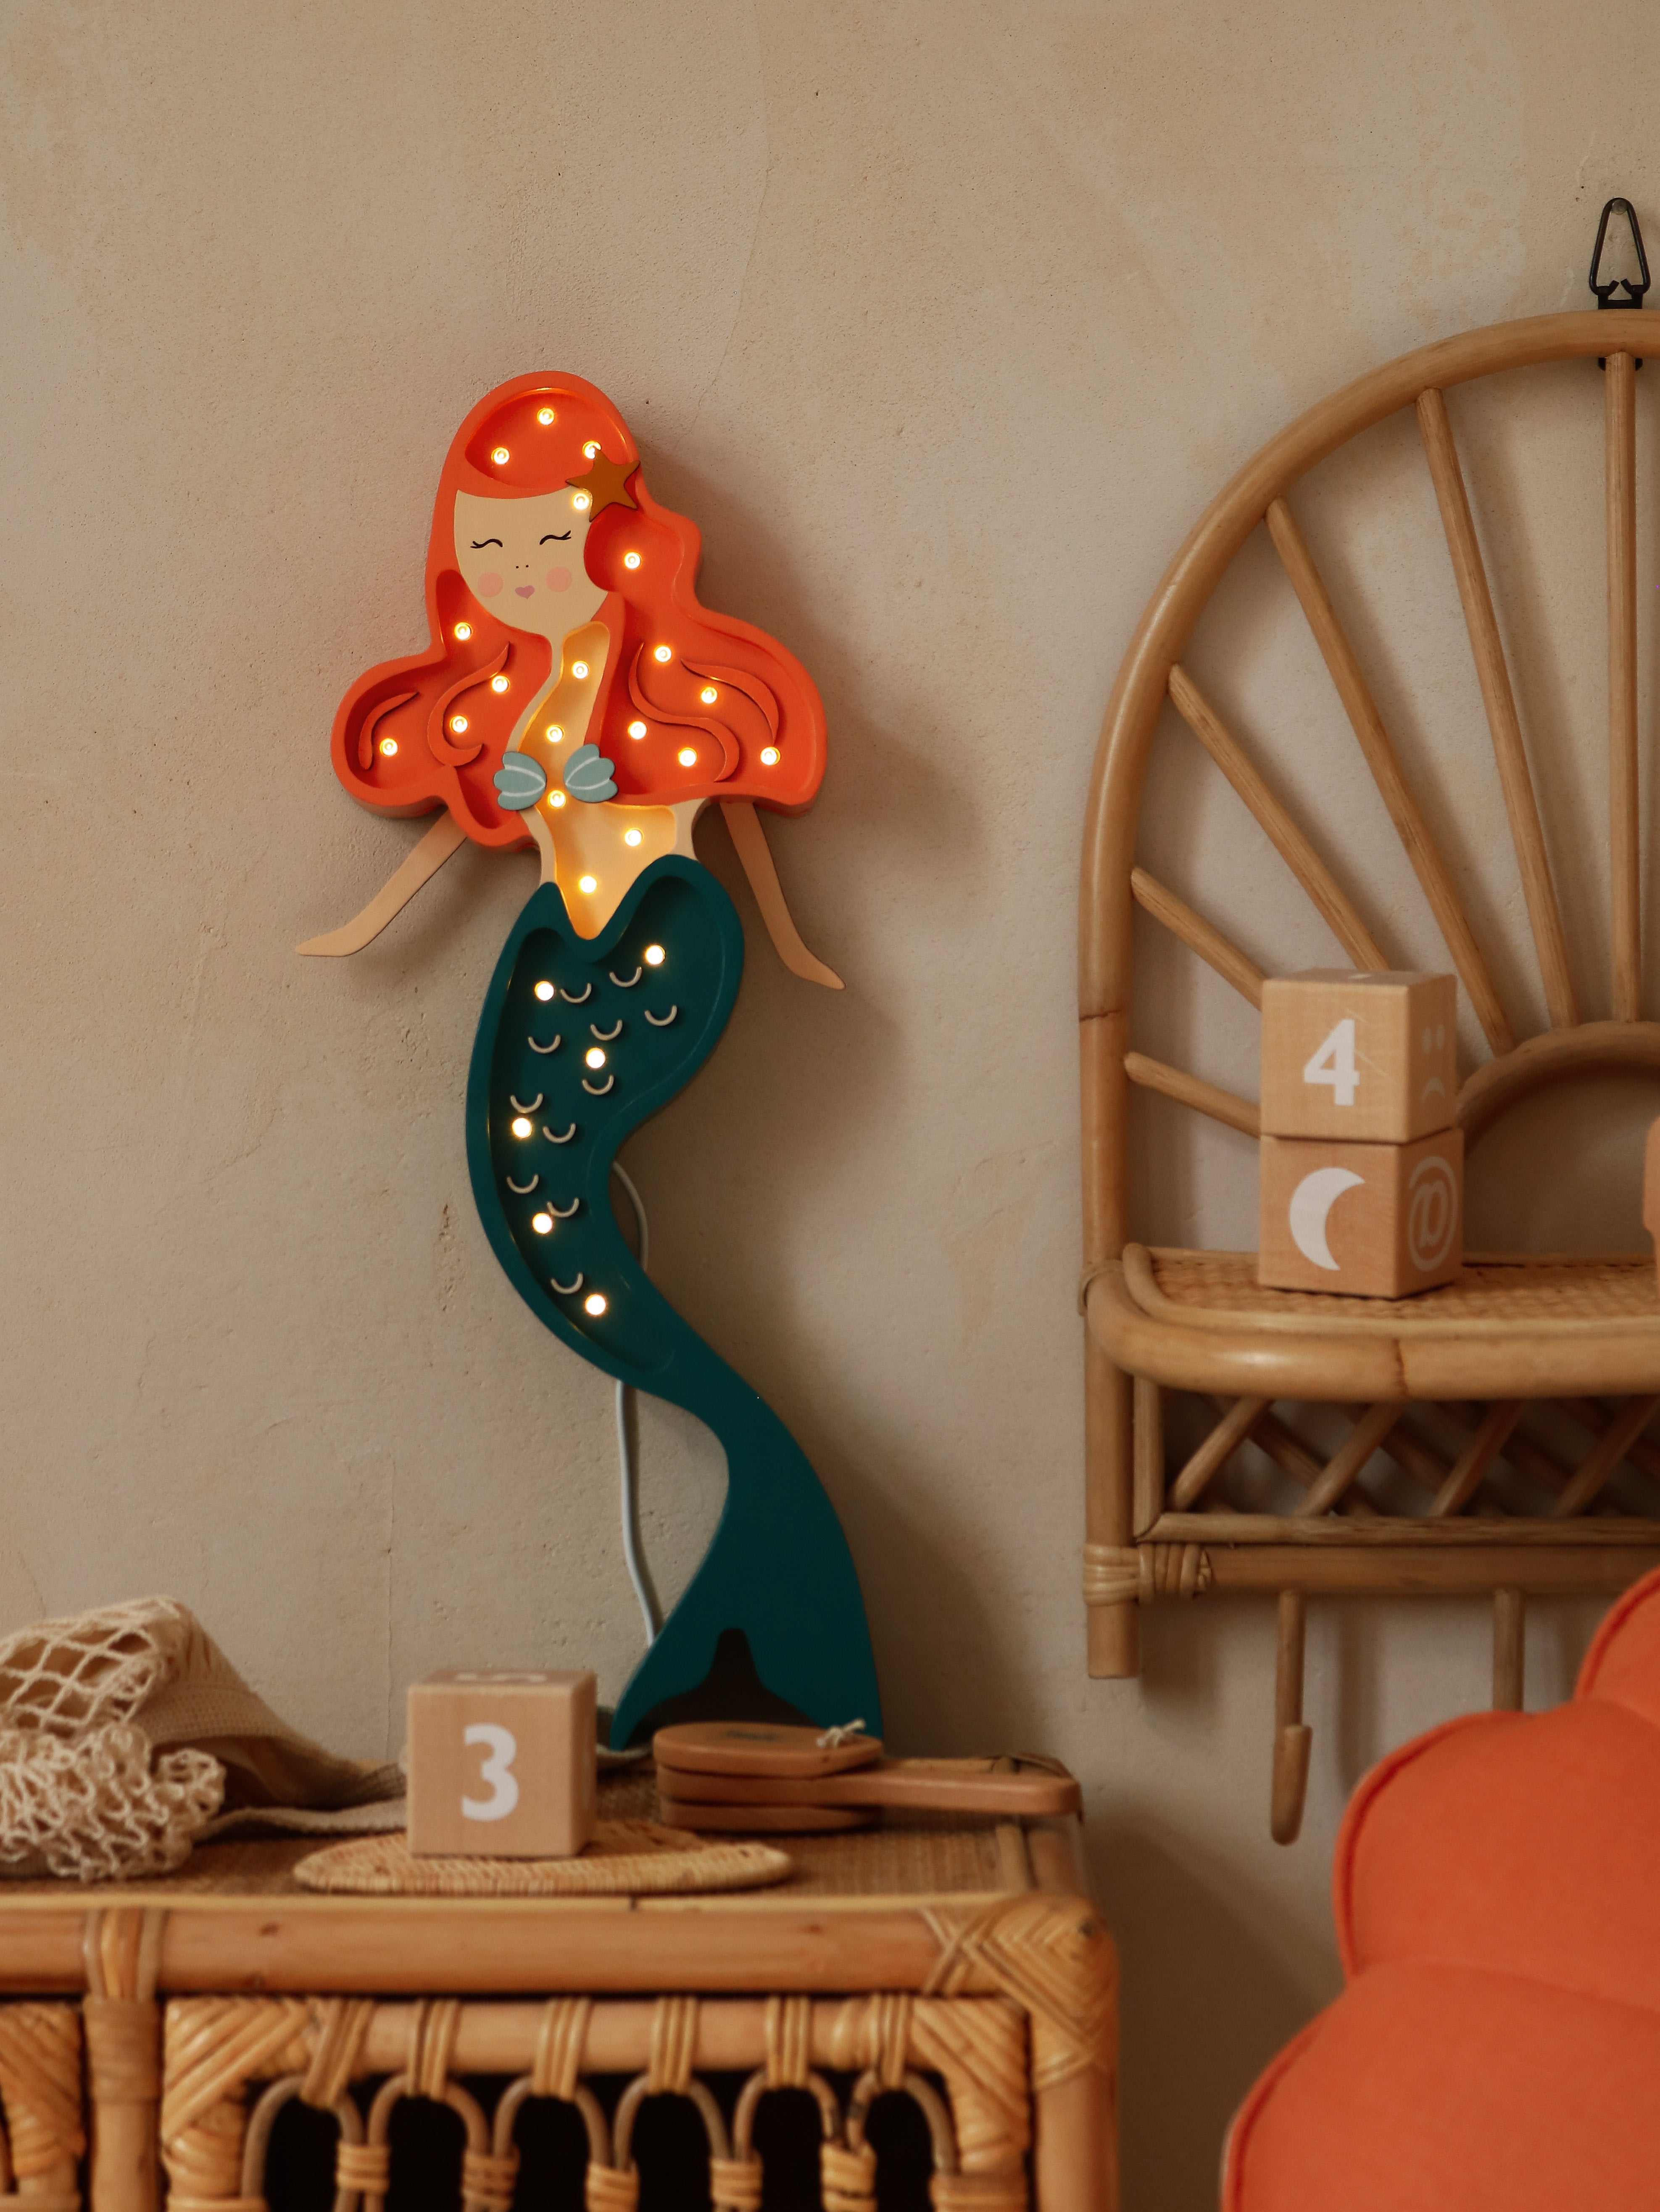 Eine Little Lights Ariel Mermaid Lampe mit roten Haaren und blaugrünem Schwanz ist an einer beigen Wand montiert, umgeben von Korbmöbeln und Dekorationsobjekten.